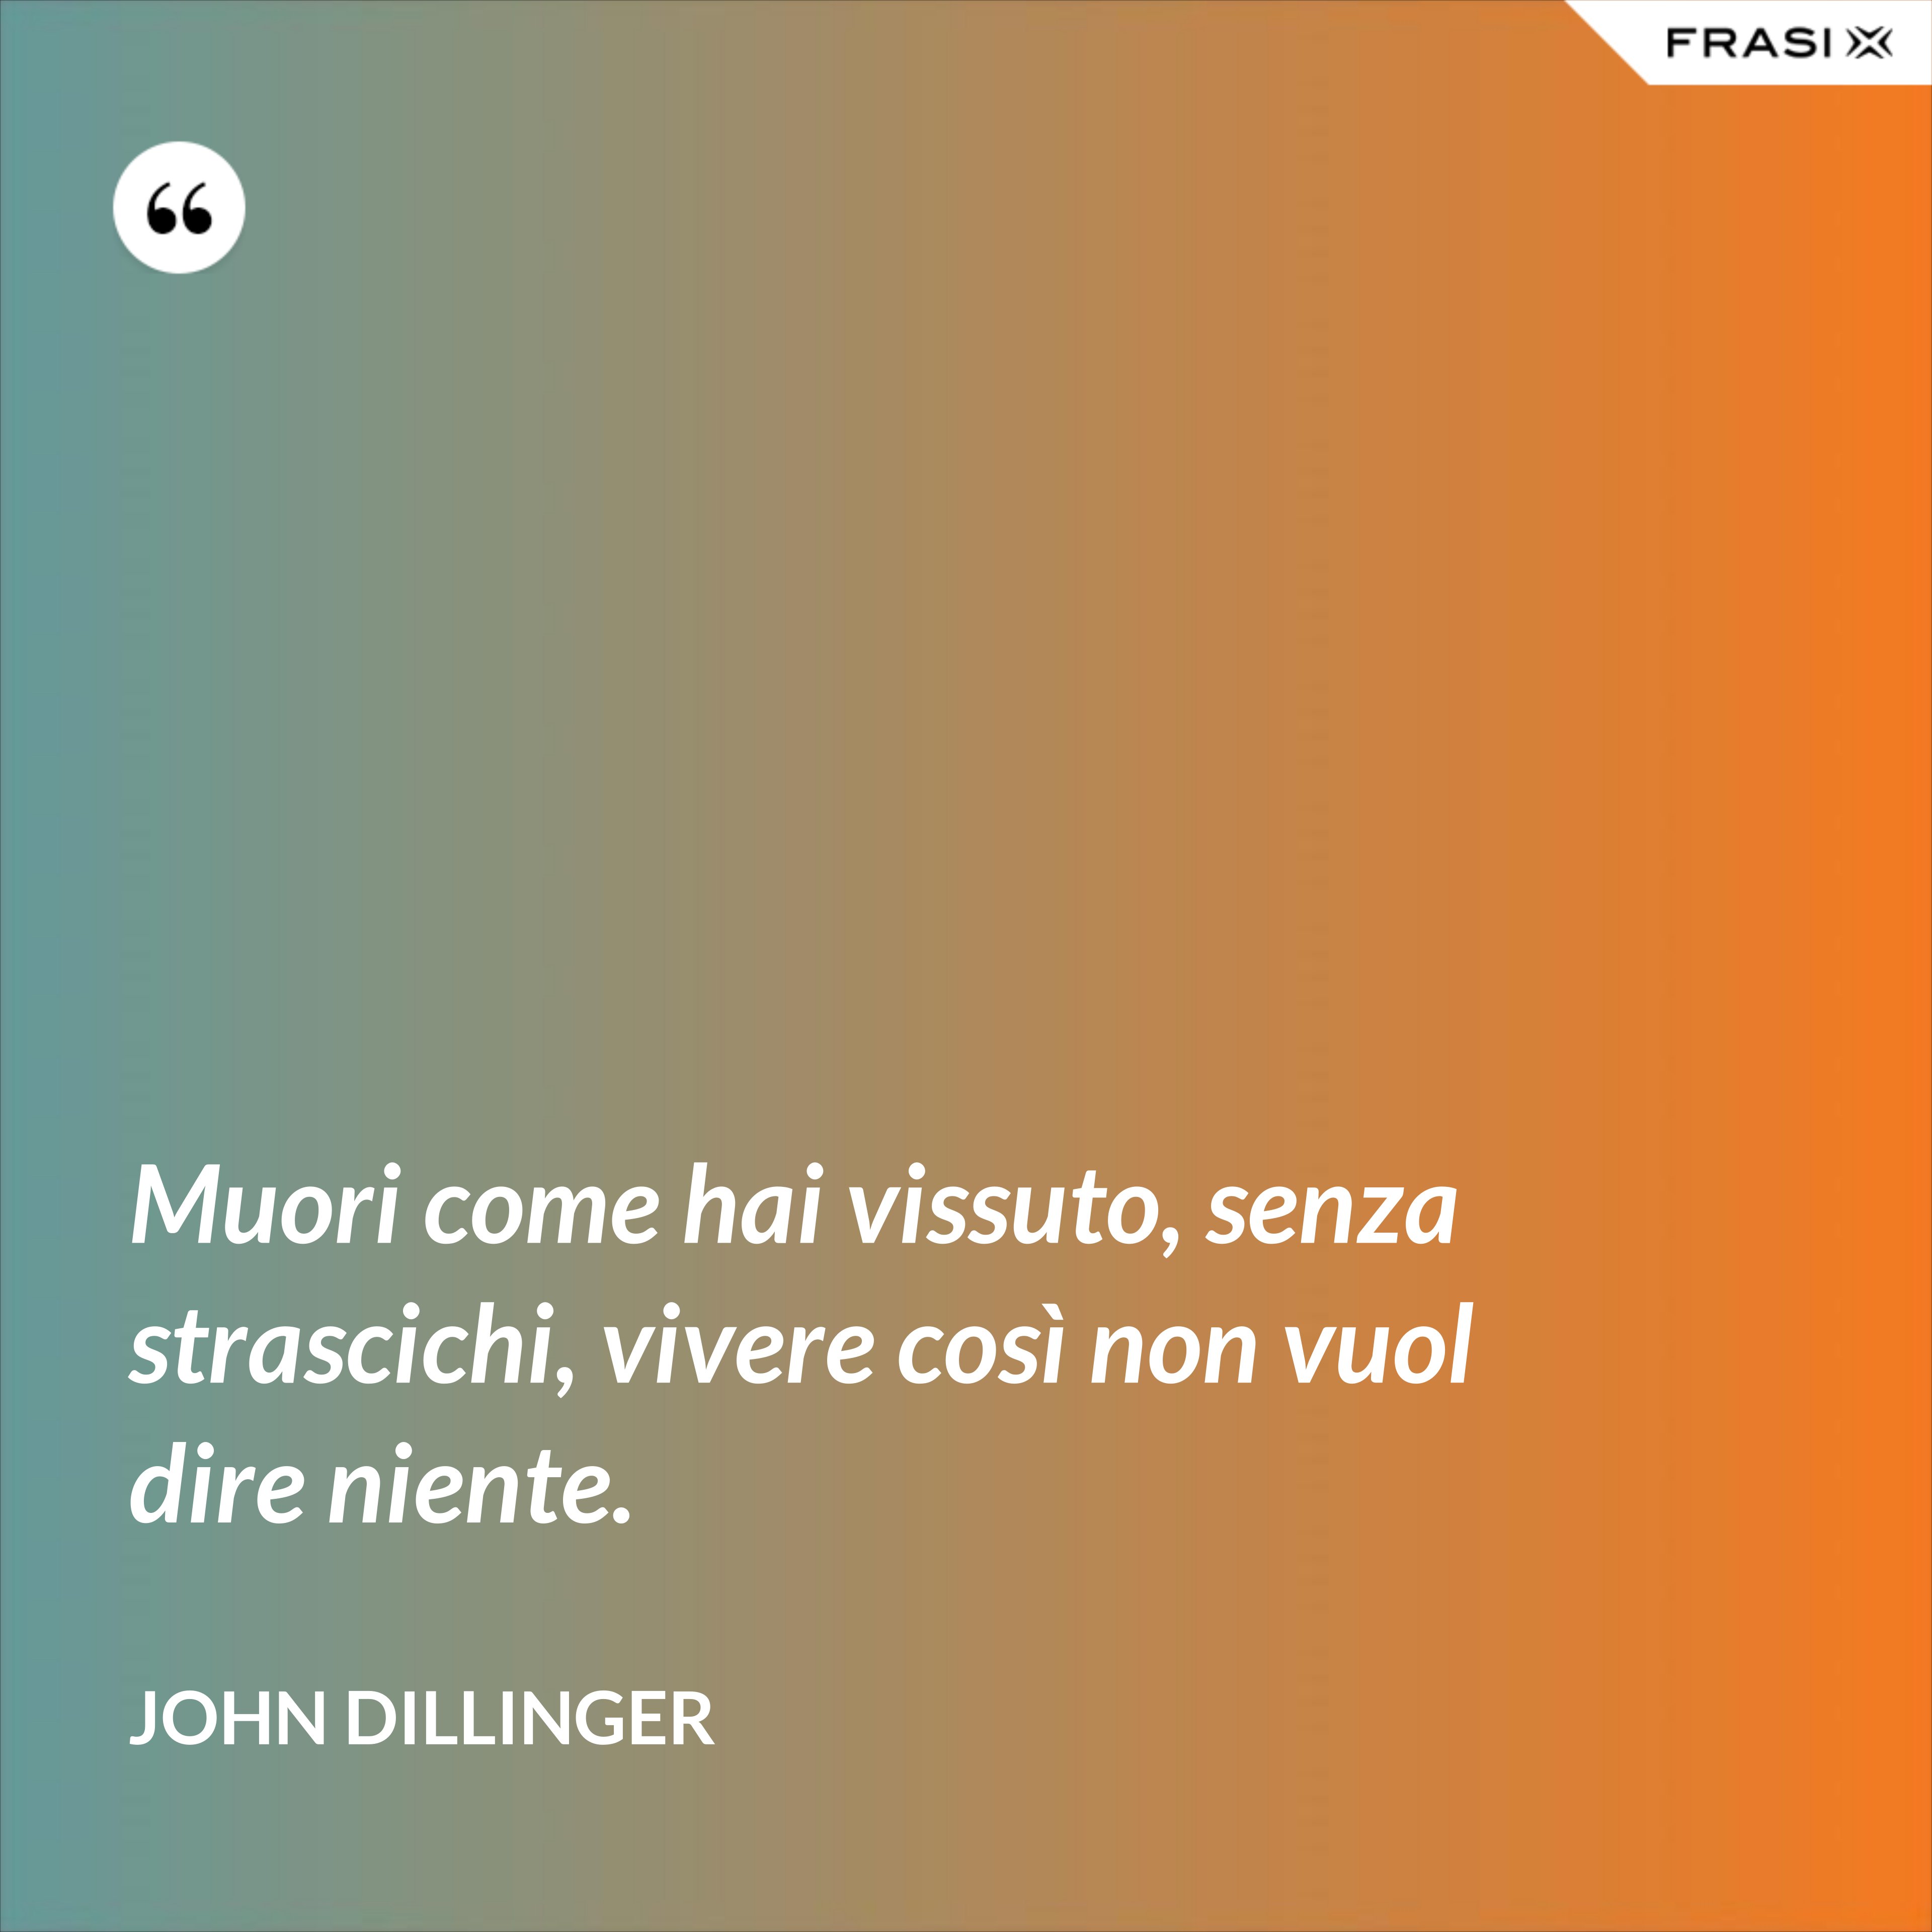 Muori come hai vissuto, senza strascichi, vivere così non vuol dire niente. - John Dillinger